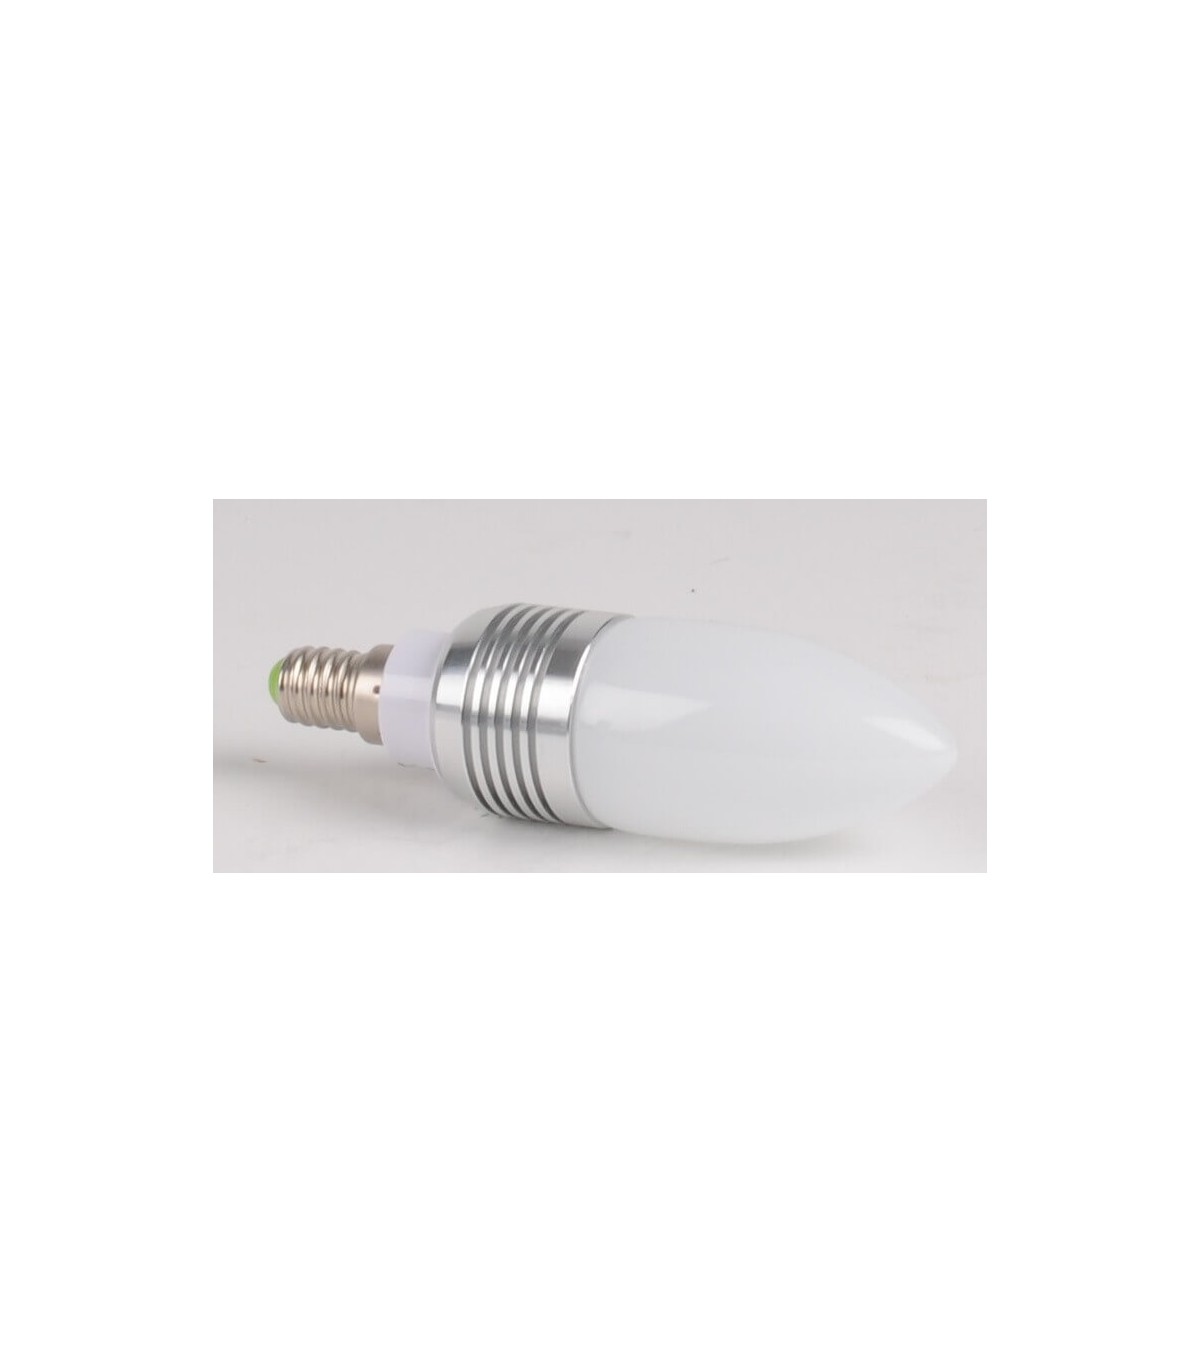 Ampoules LED E14 - Lampes LED culot E14 petite vis